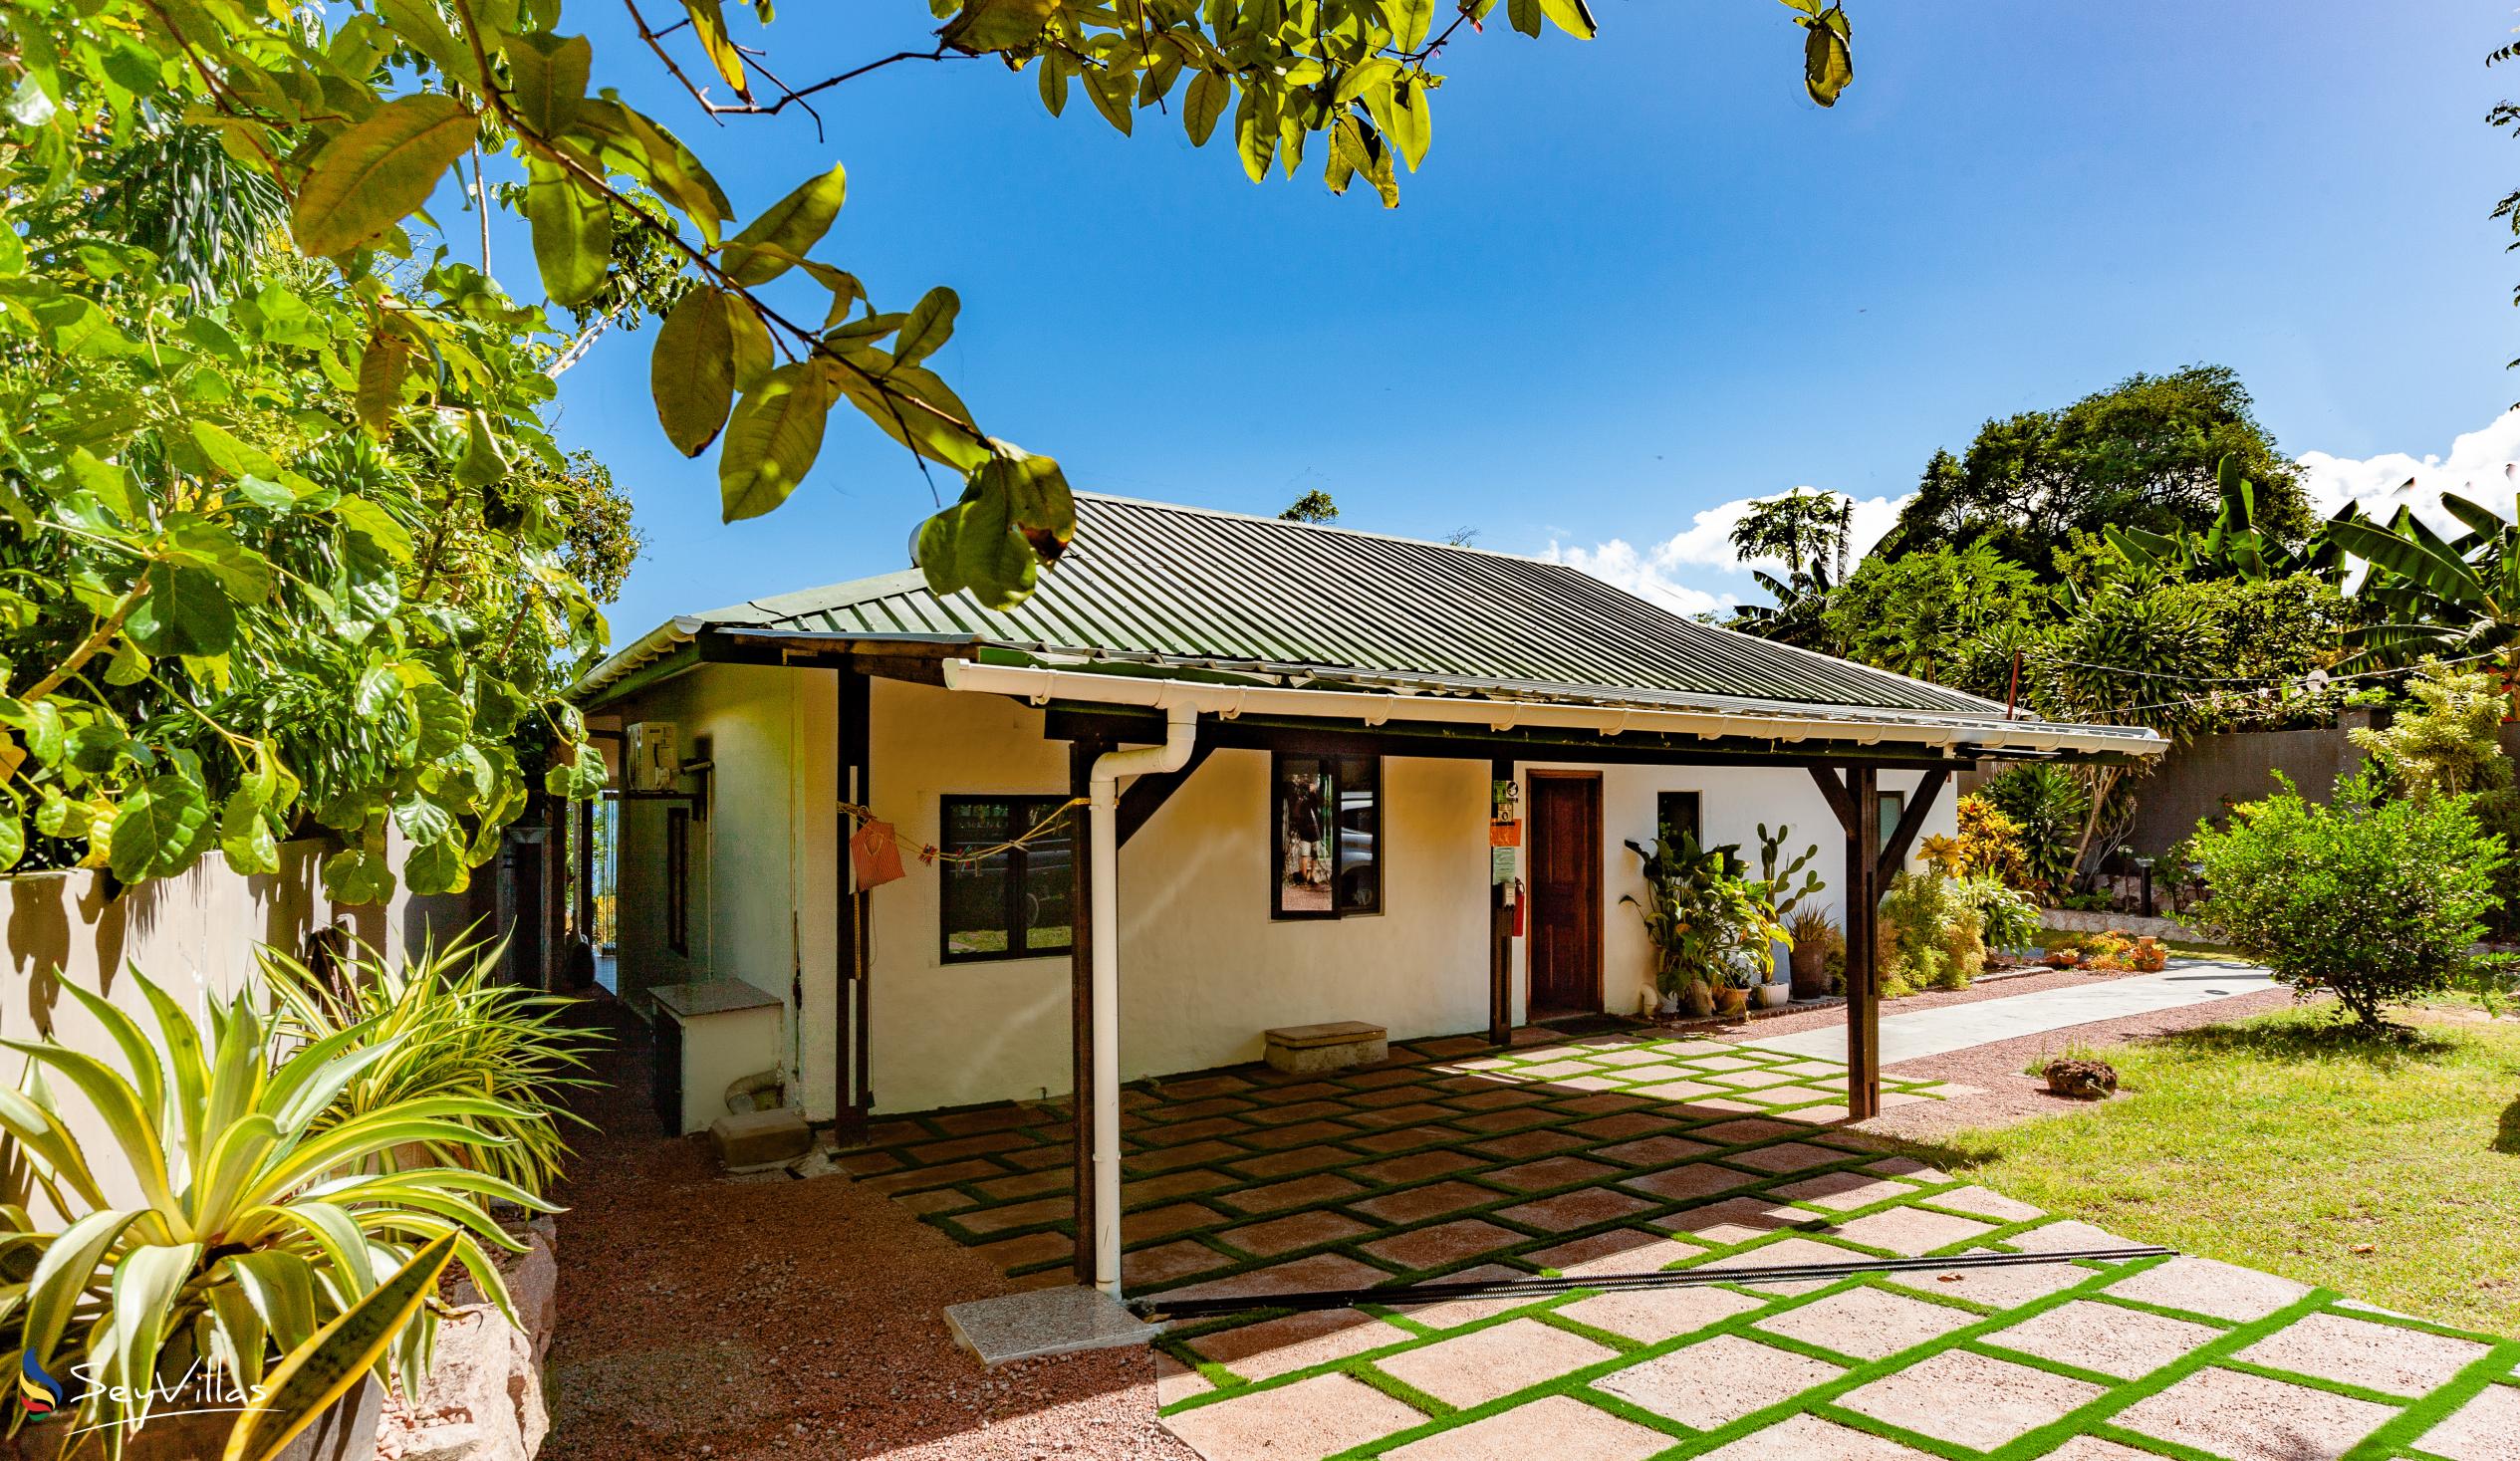 Foto 14: Cote Mer Villa - Aussenbereich - Praslin (Seychellen)